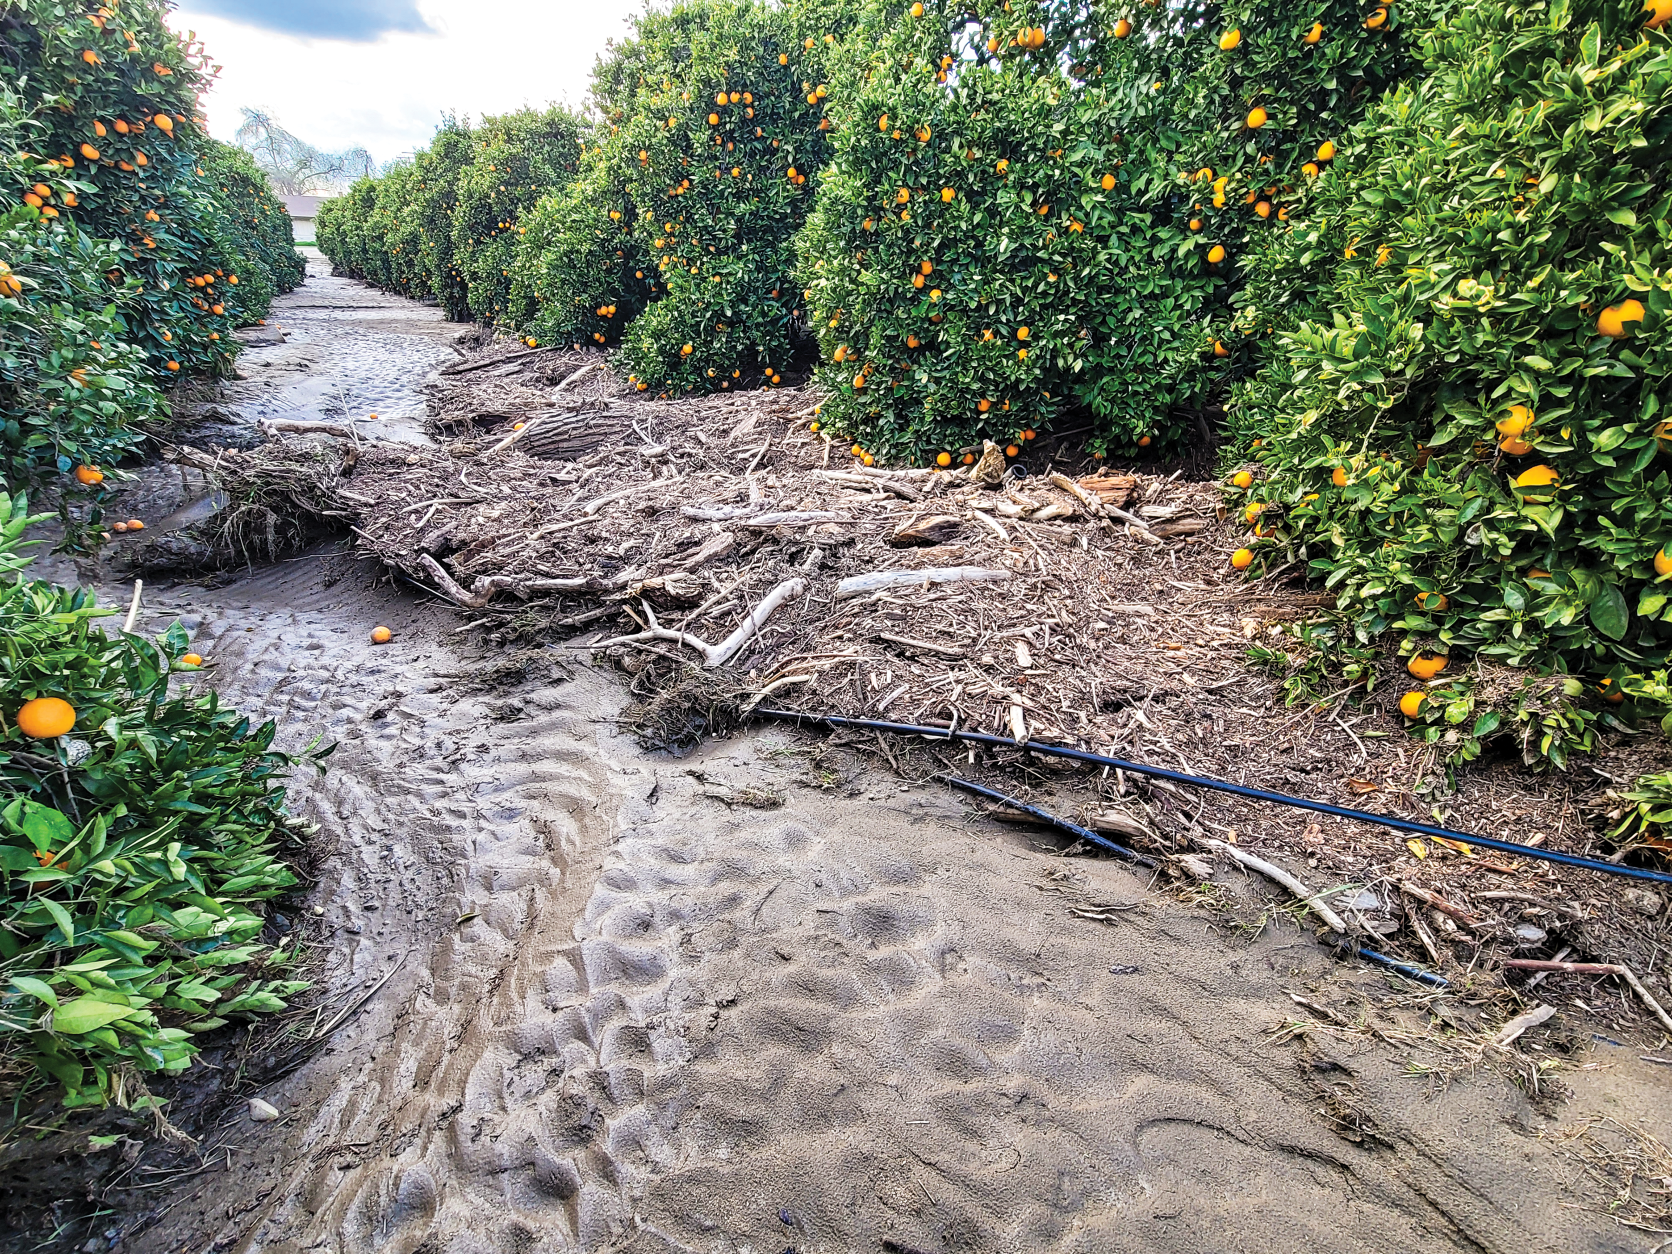 Tulare citrus farmers battle mud, debris